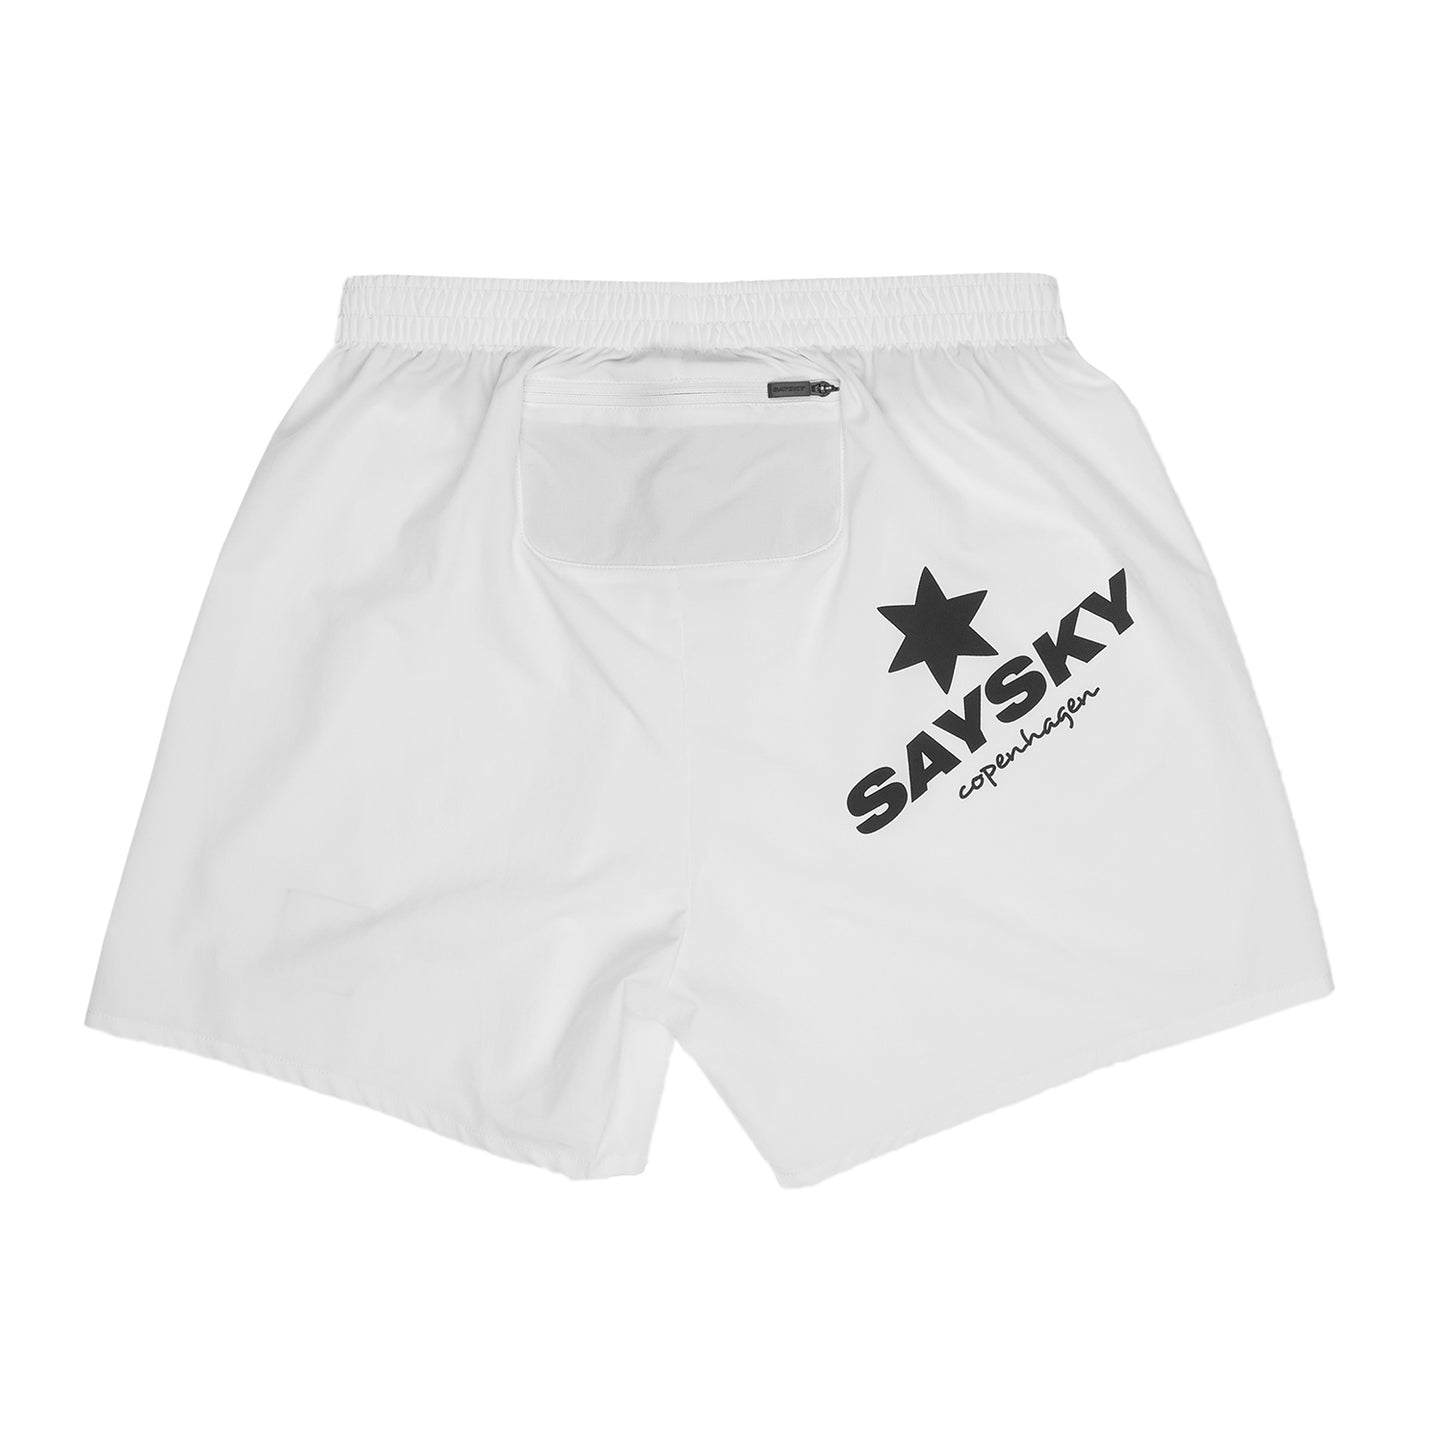 ランニングショーツ XMRSH01 Pace Shorts - White [ユニセックス]